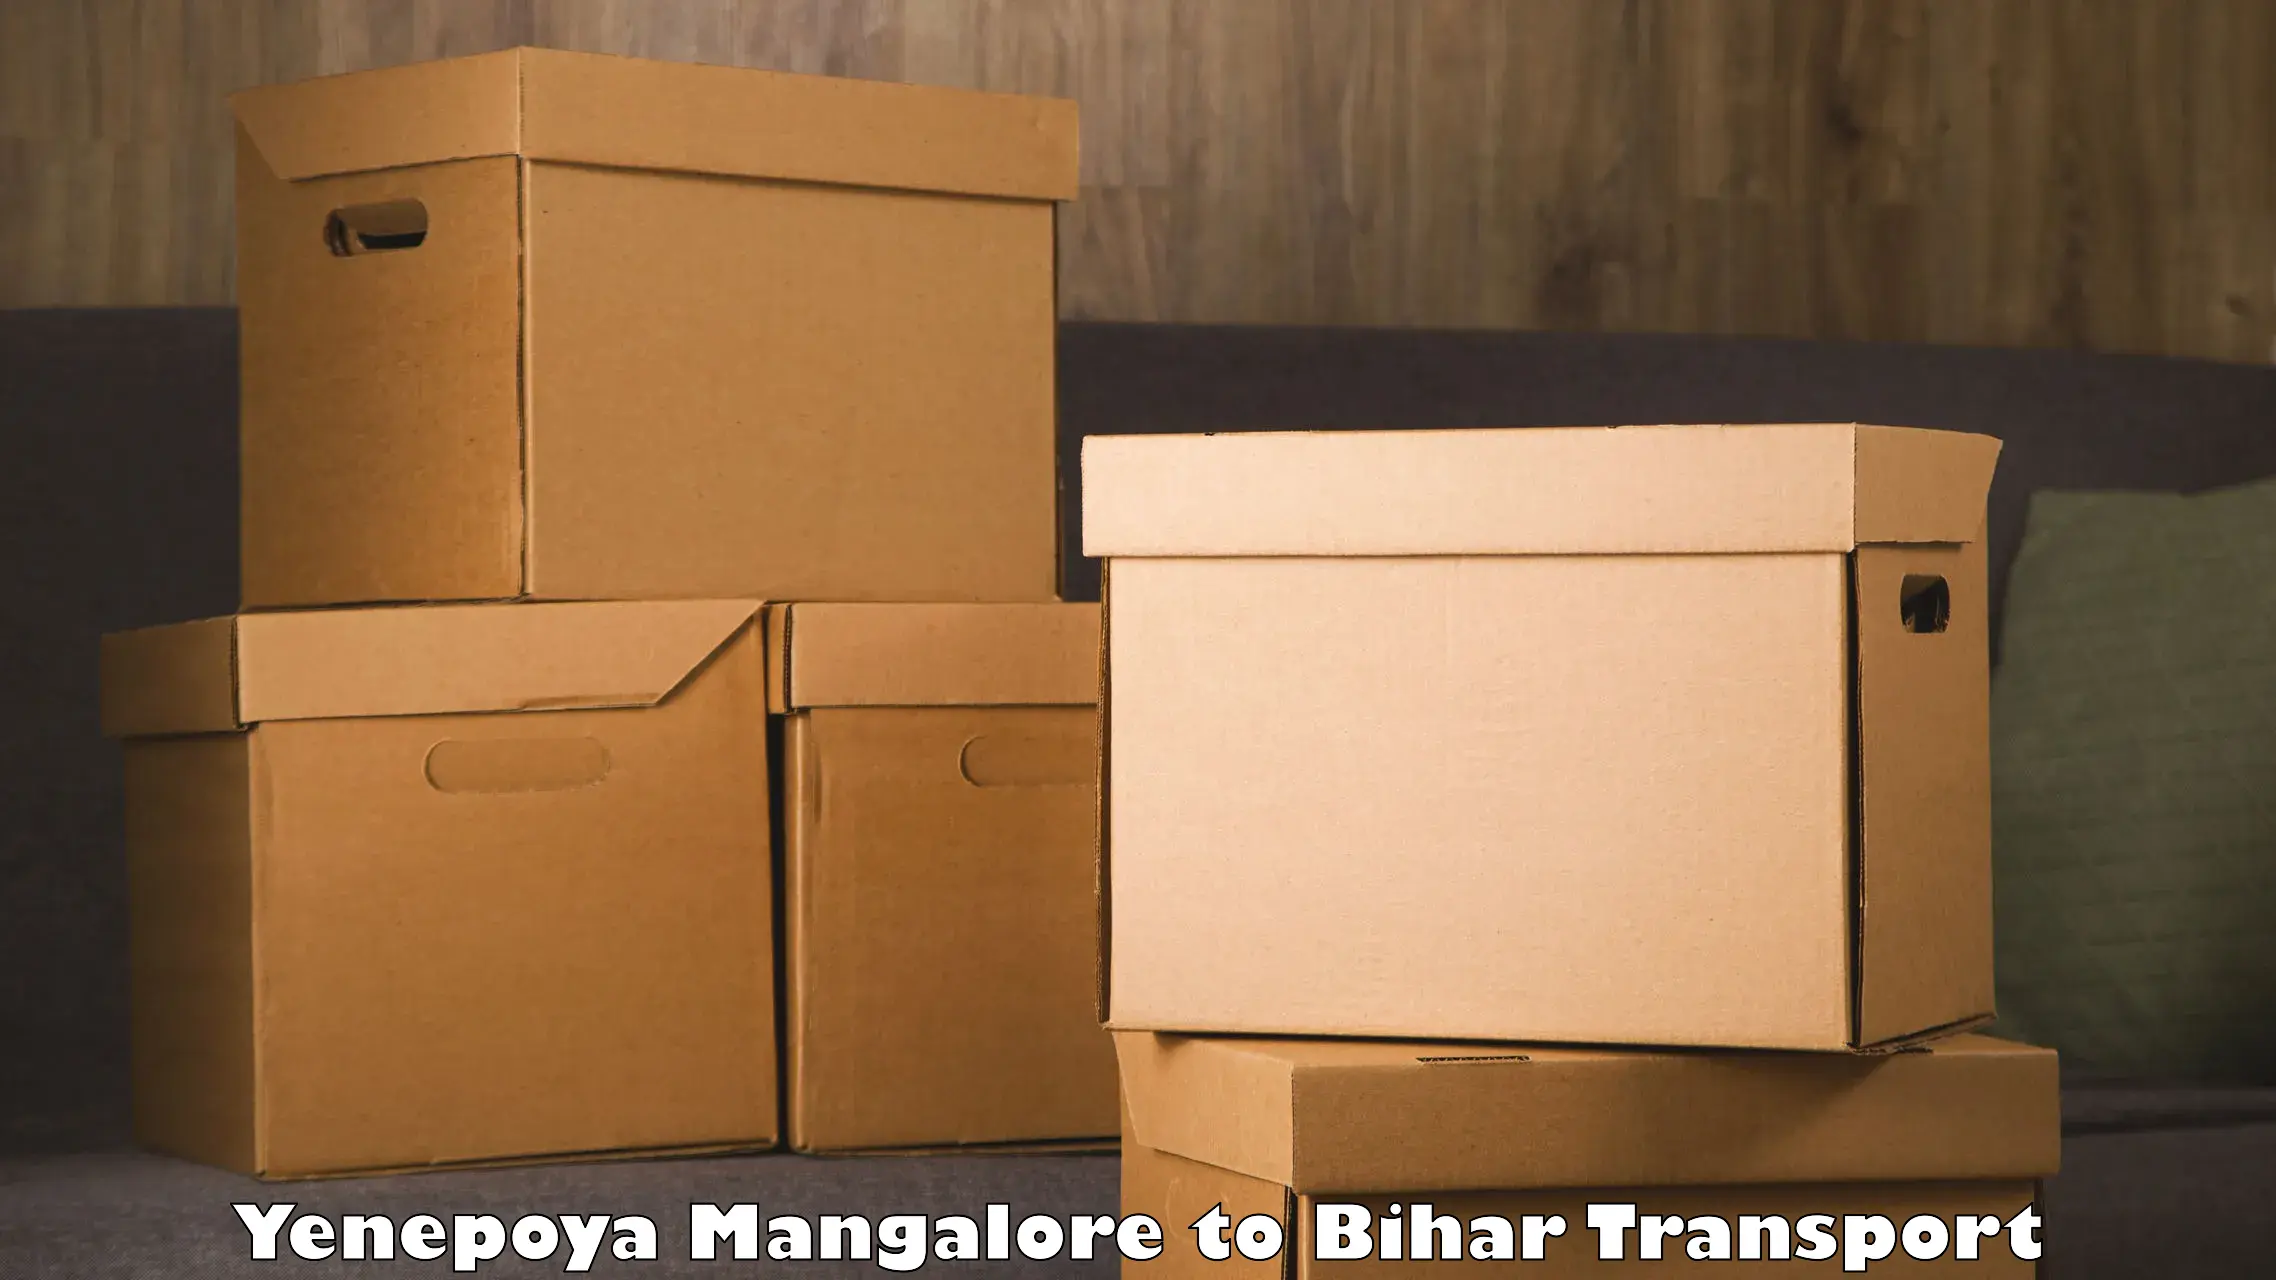 Delivery service Yenepoya Mangalore to Dhaka